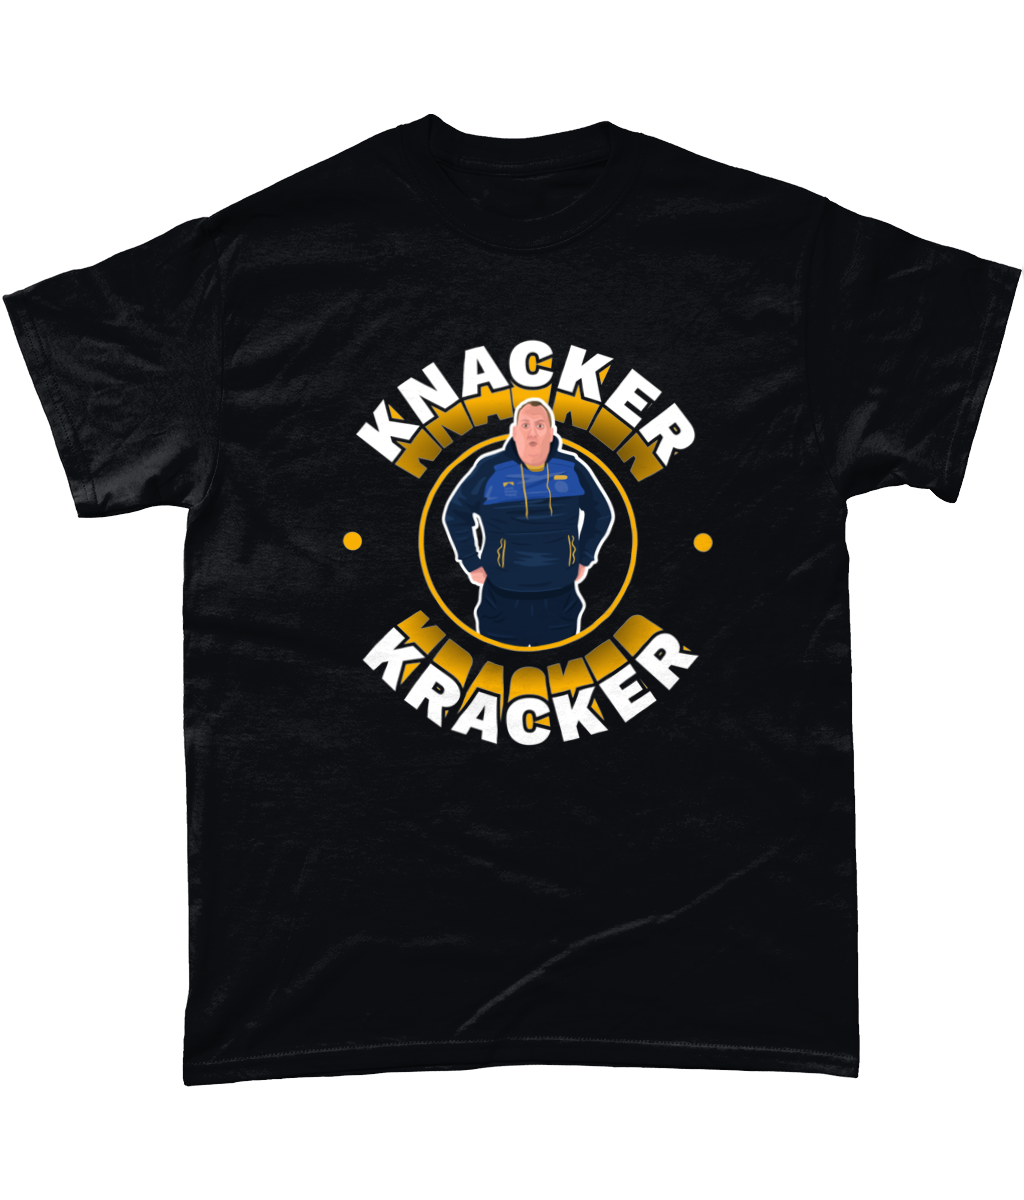 Knacker Kracker T-Shirt